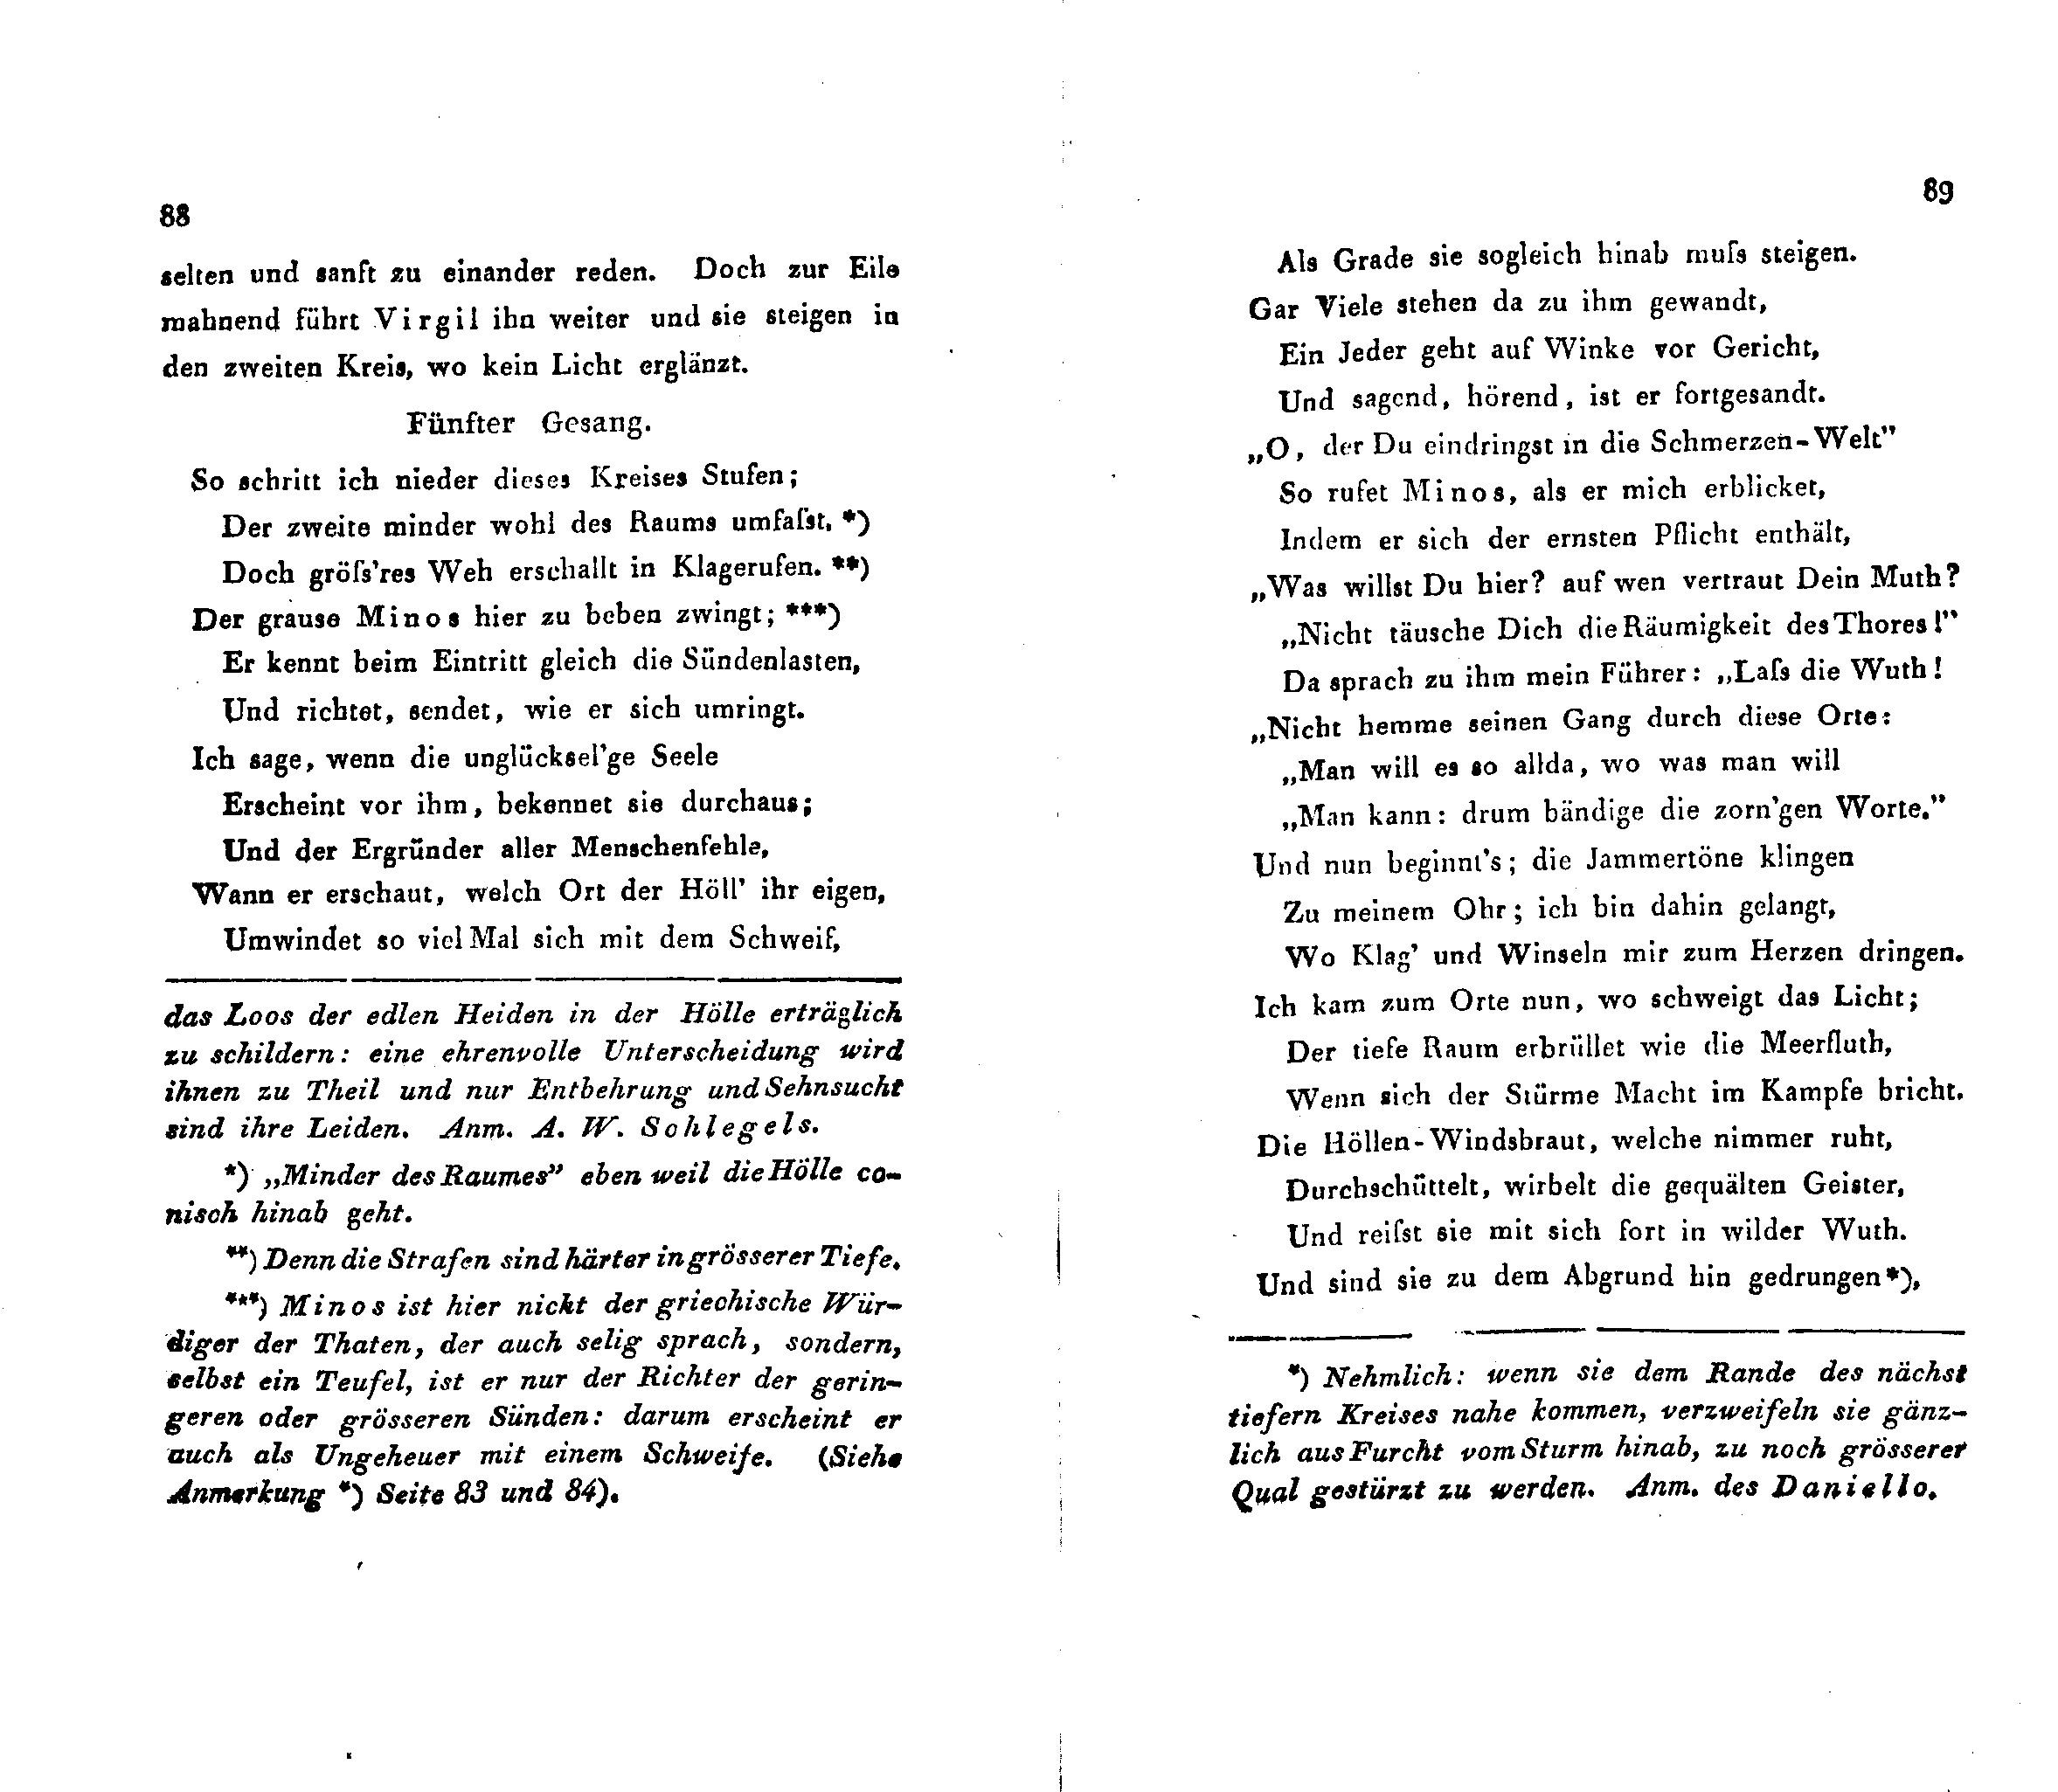 Ueber Dante Alighieri, seine Zeit und seine Divina Comedia (1824 – 1825) | 12. (88-89) Haupttext